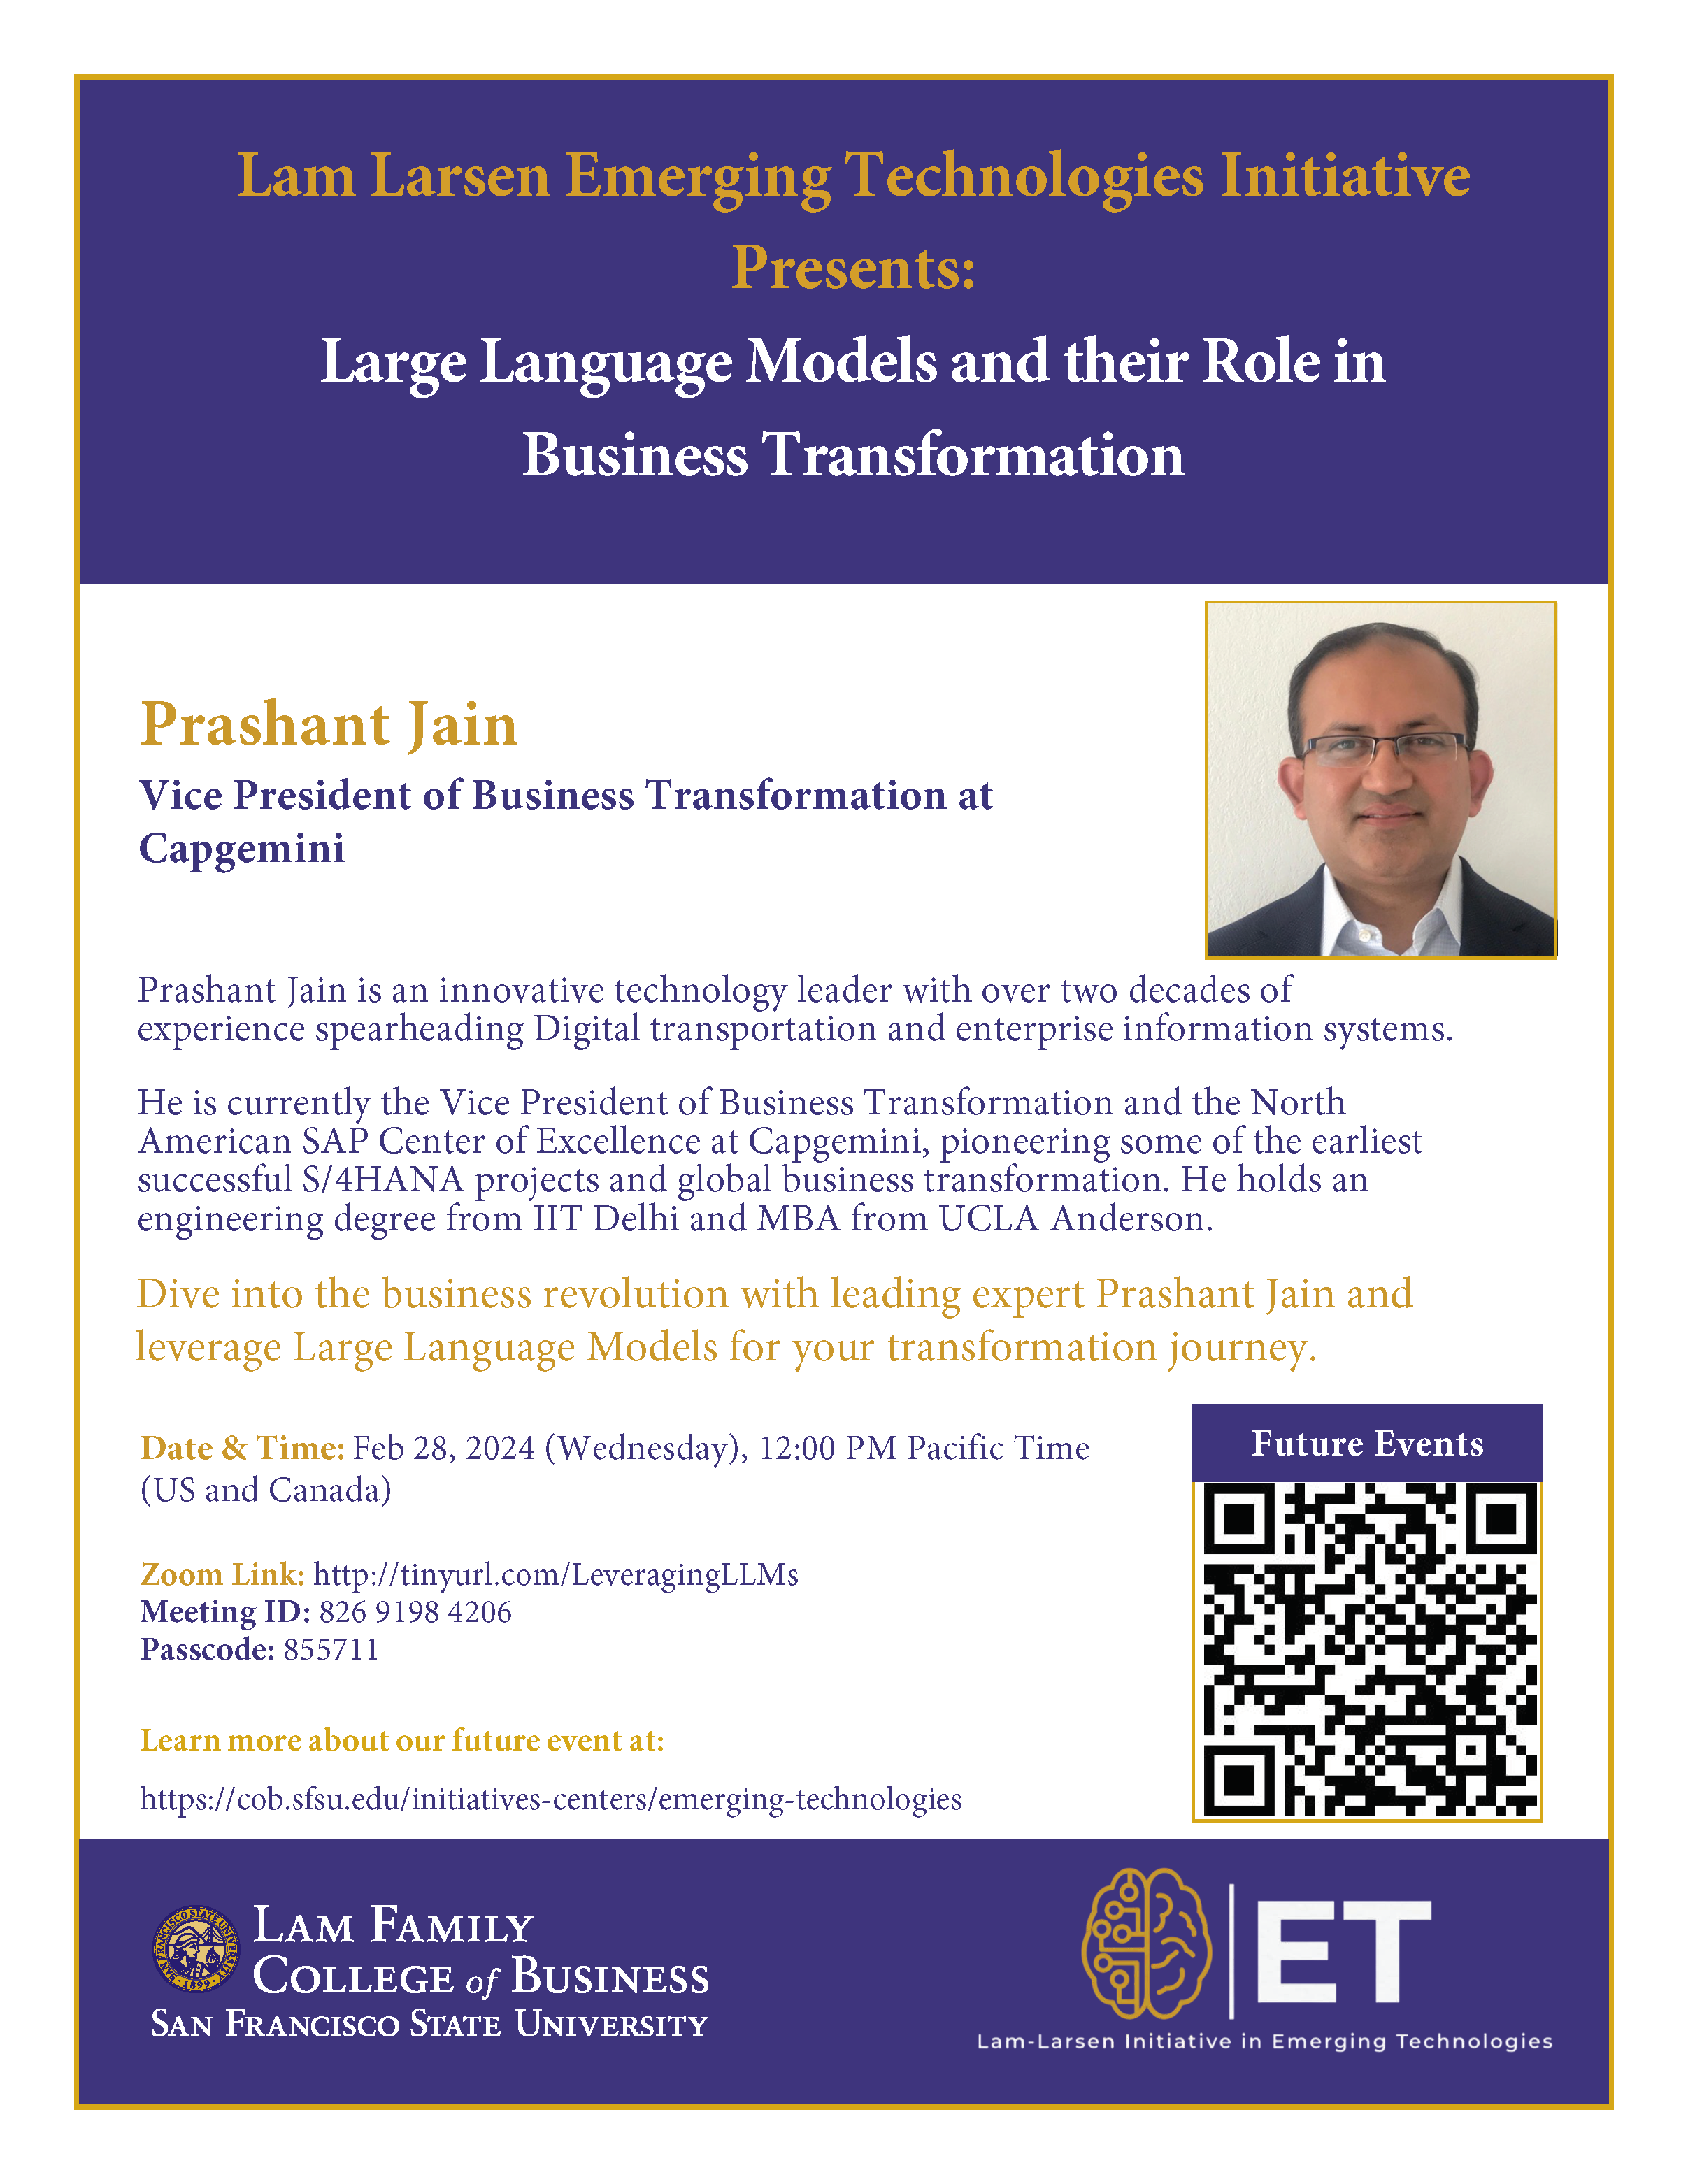 flyer for LFCoB Leveraging LLMS event hosting Prashant Jain